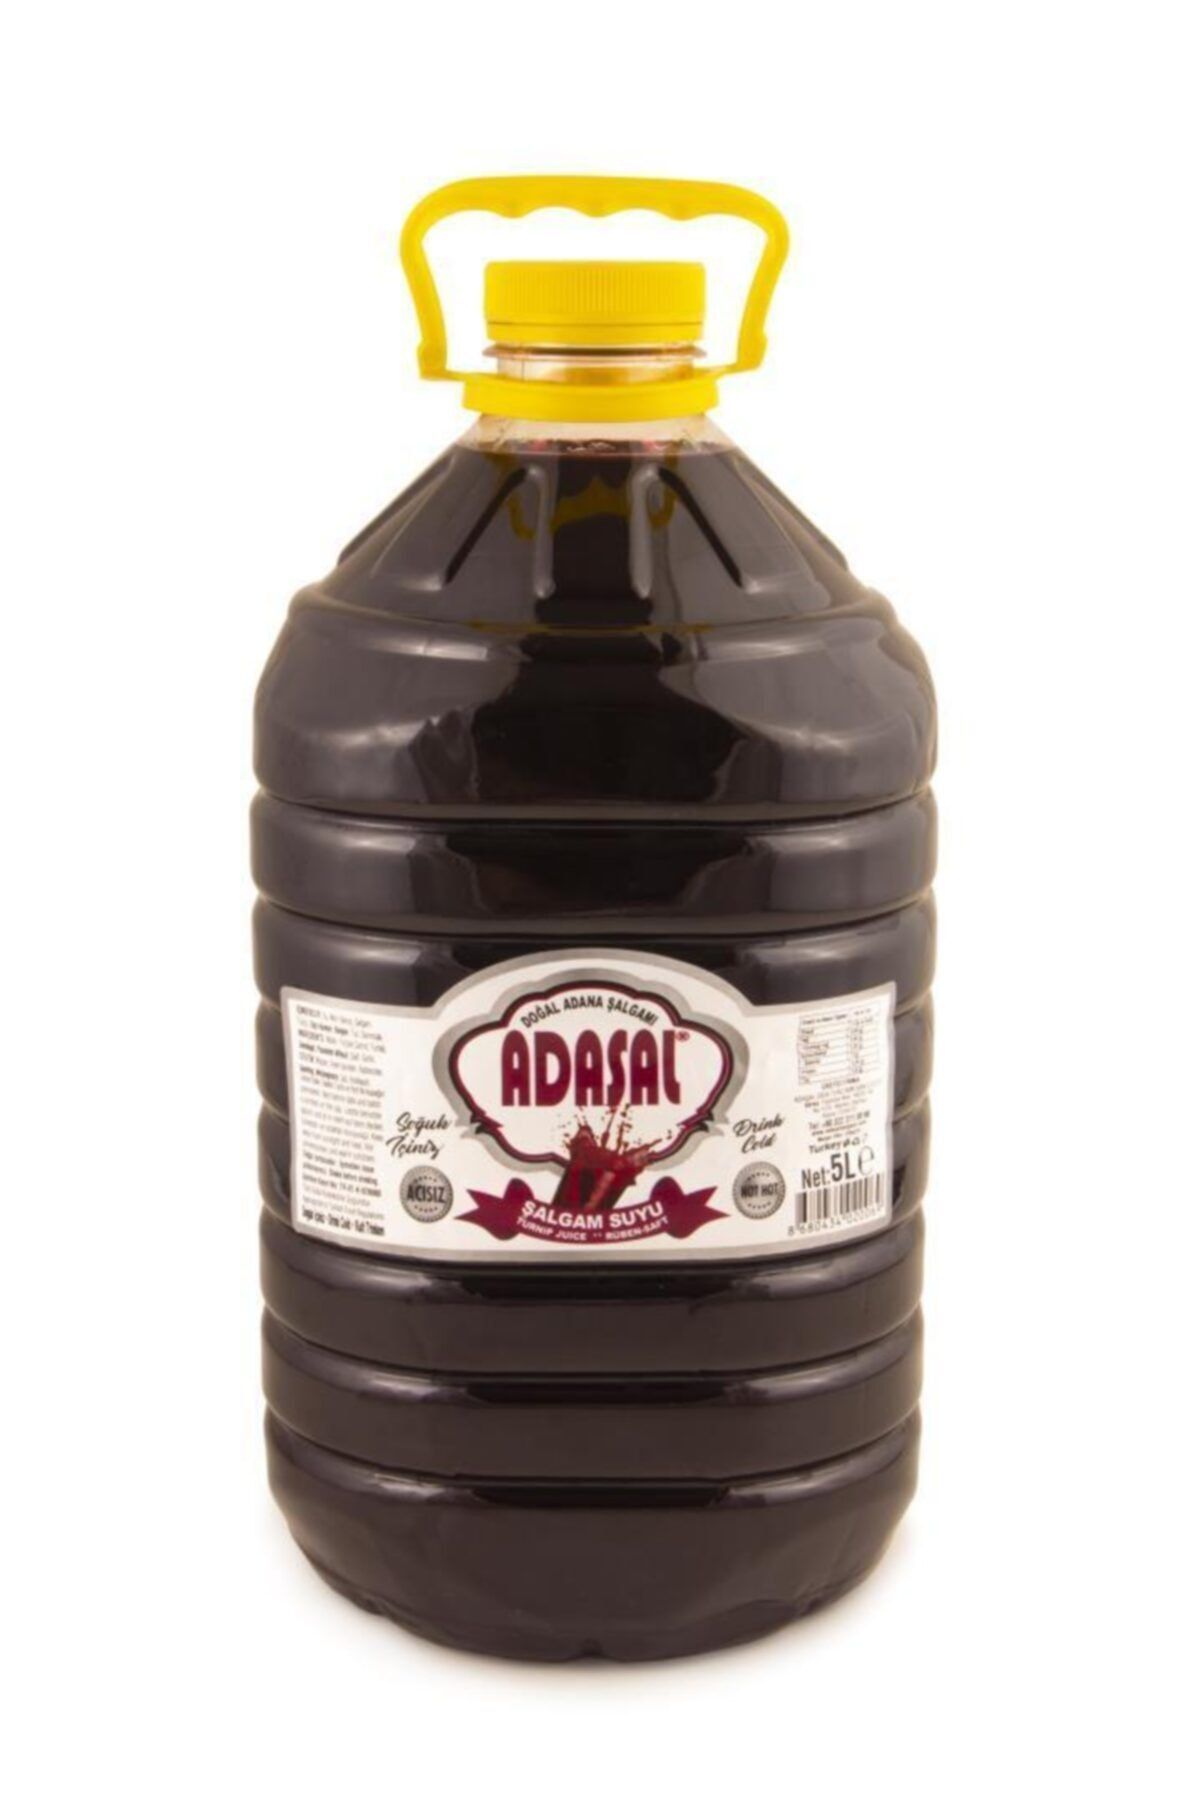 AlpCollection Adana'dan Adaşal Acısız 5 lt C Vitamini Deposu 2 Adet Şalgam Suyu